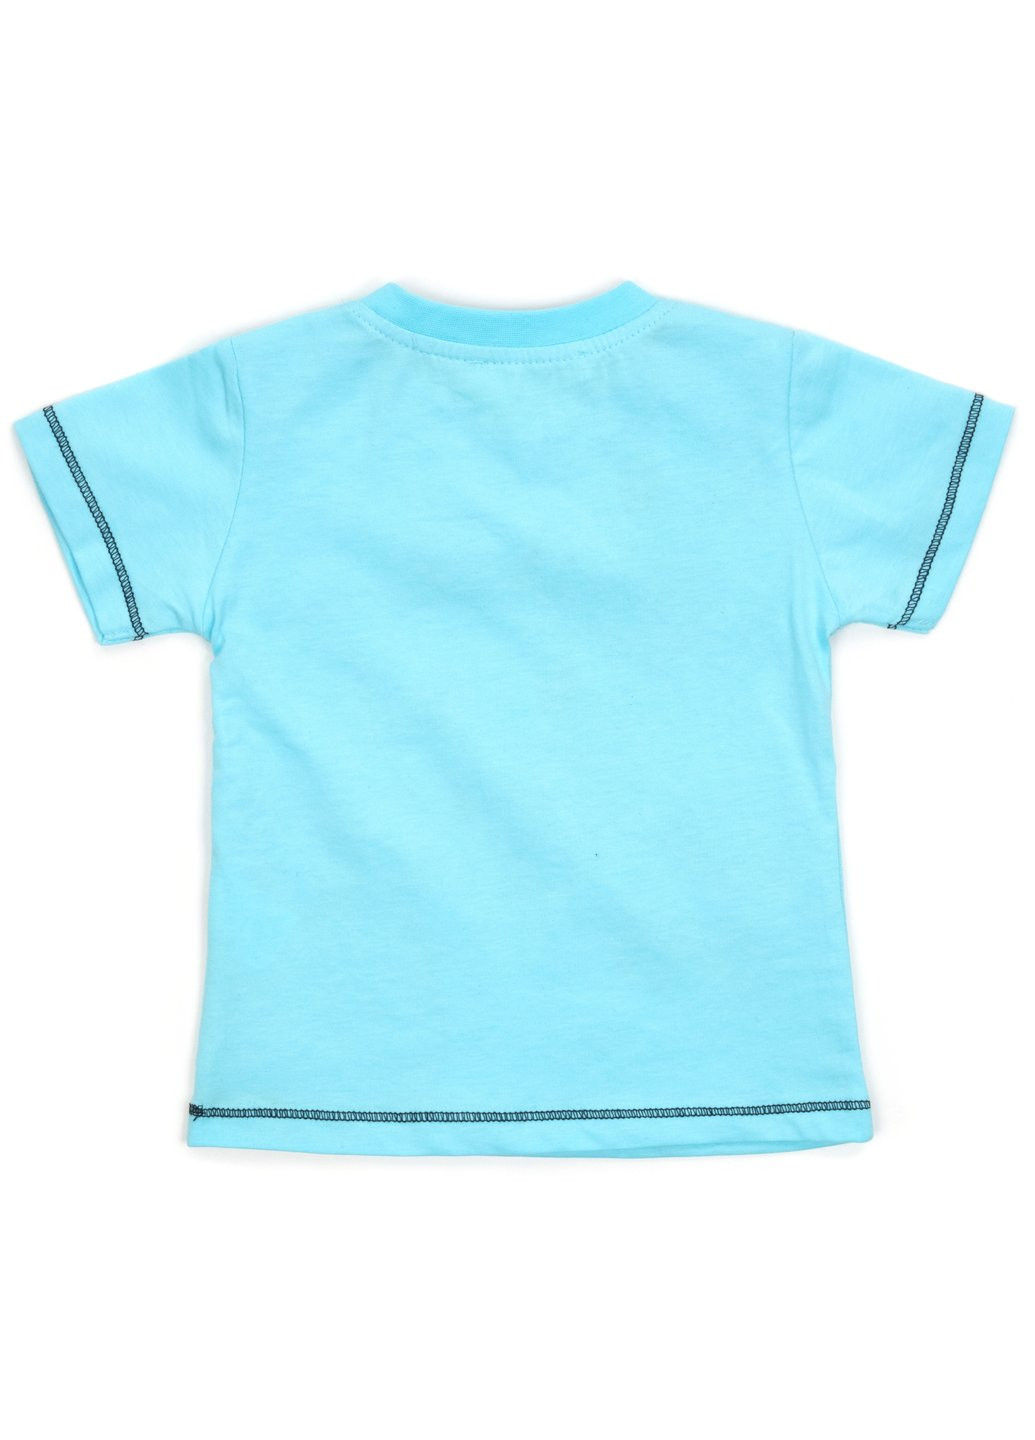 Блакитний літній набір дитячого одягу з жирафом (13739-74b-blue) Breeze